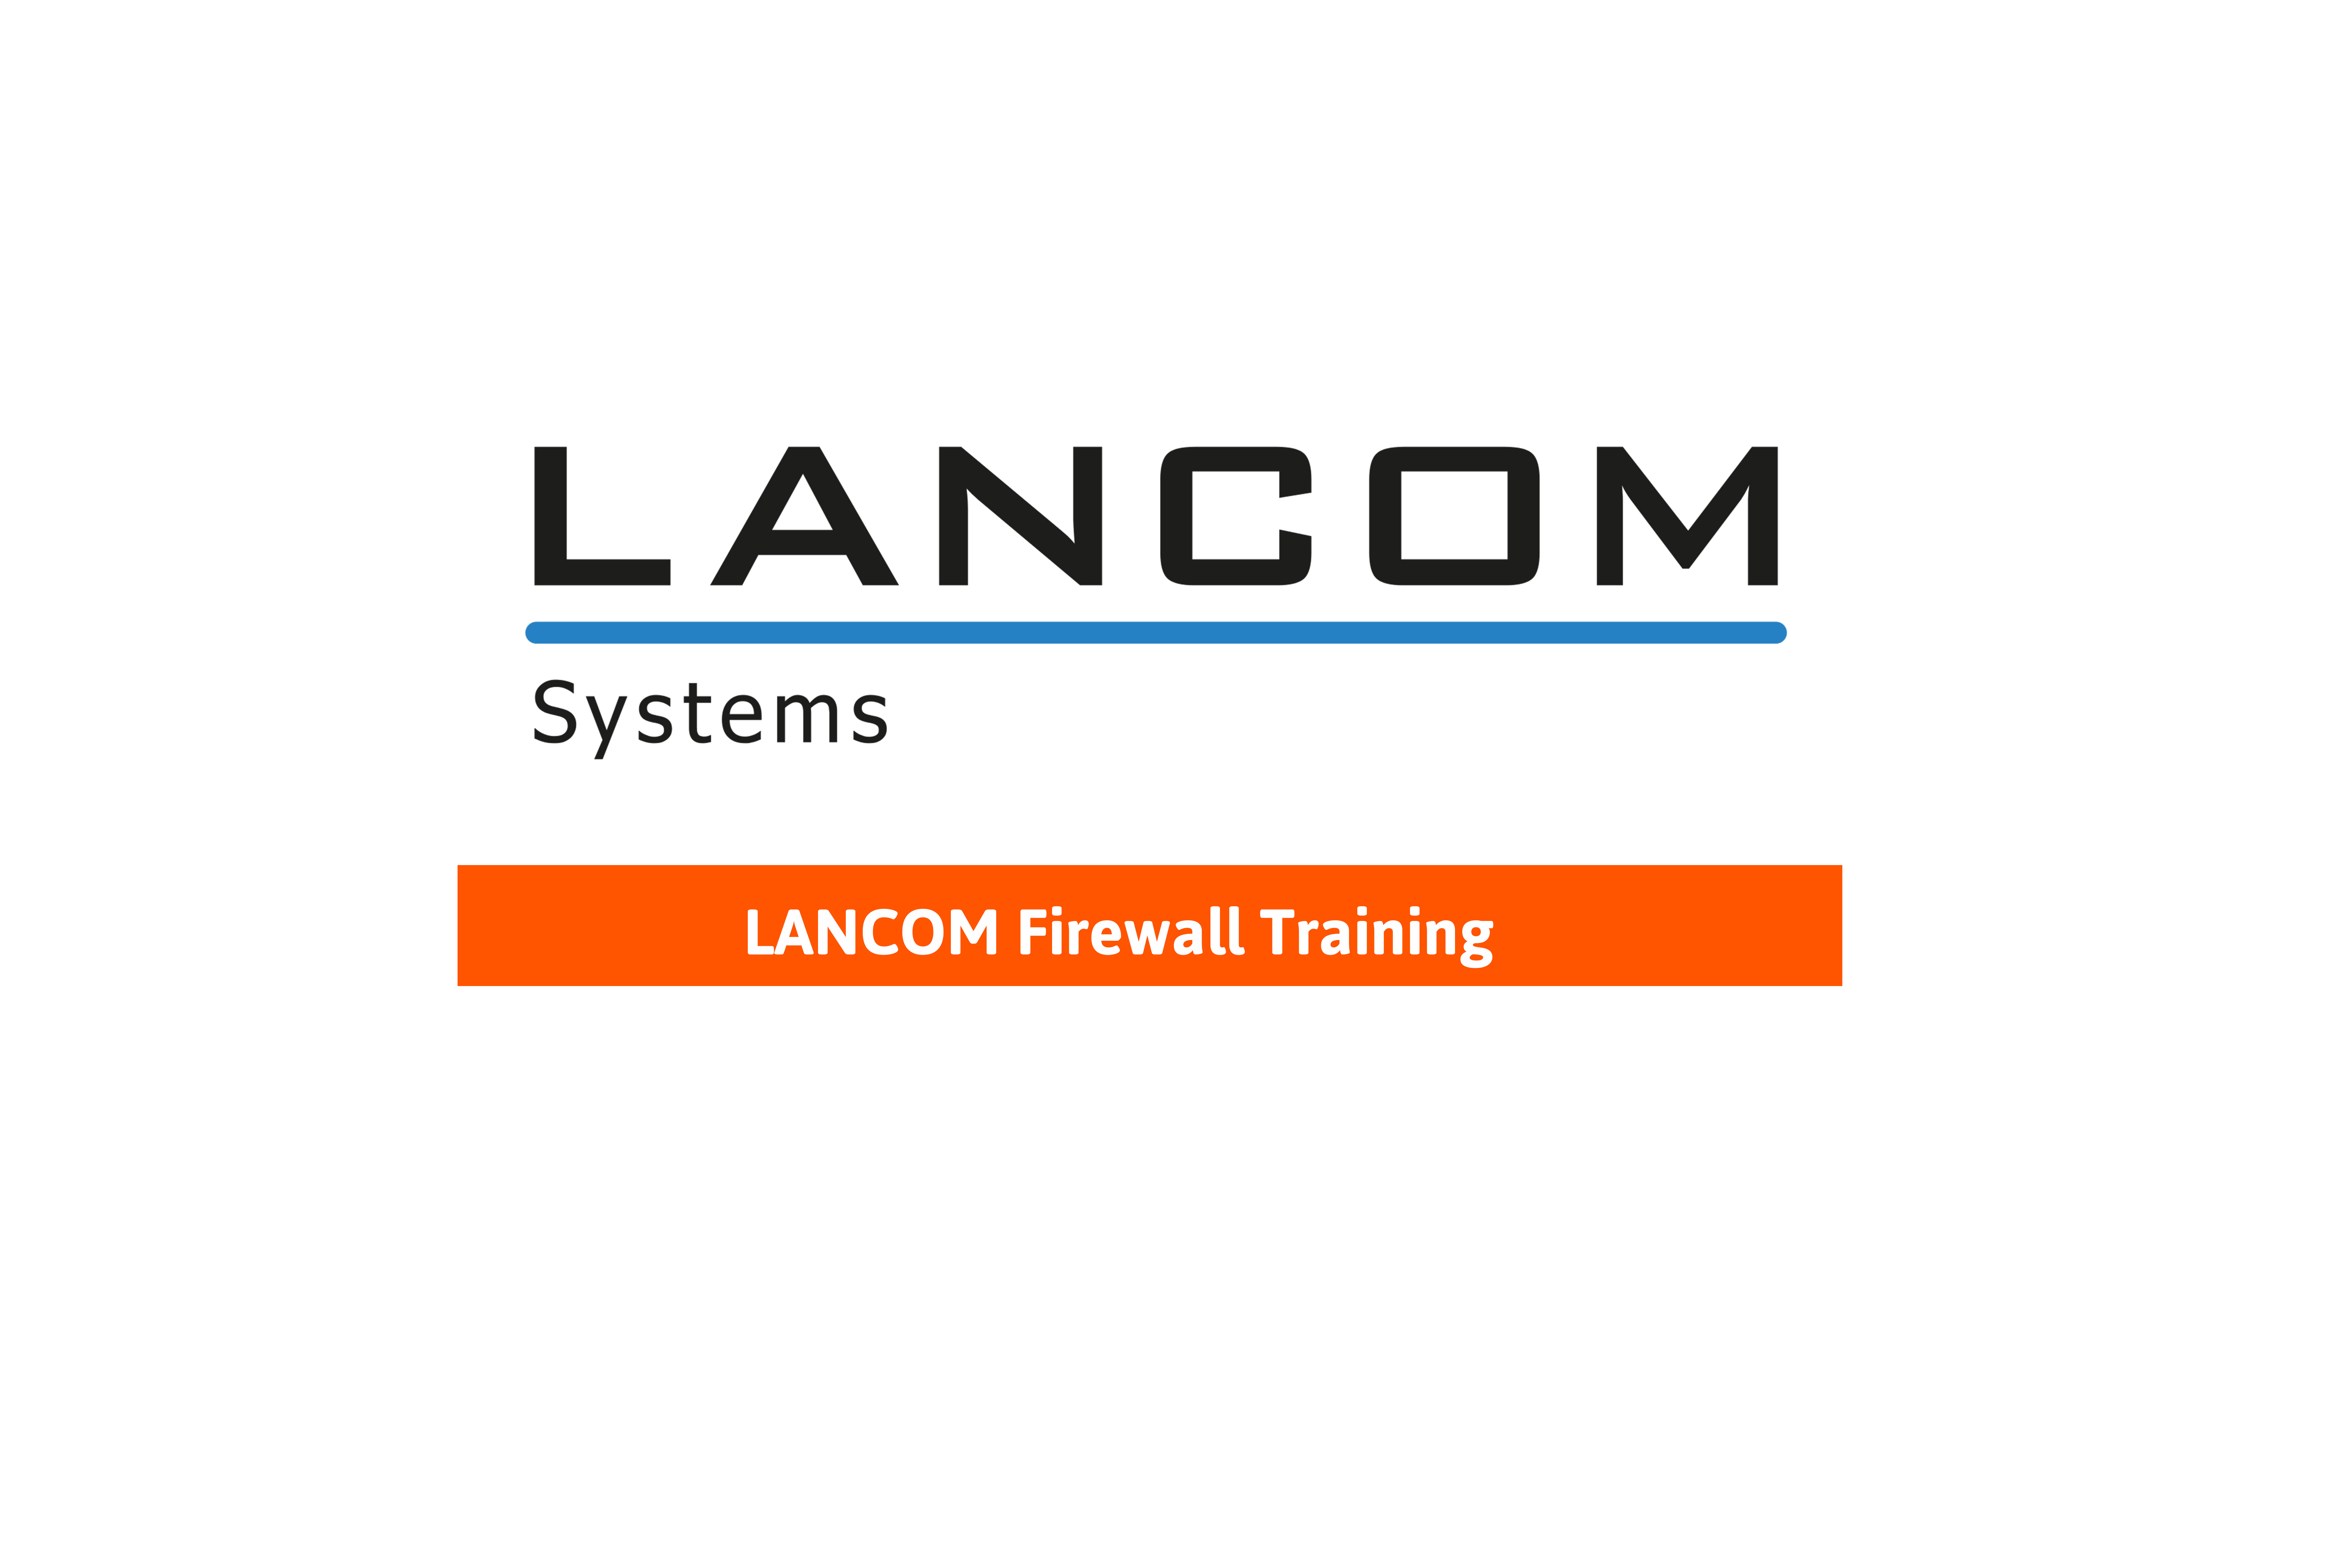 LANCOM Firewall Training